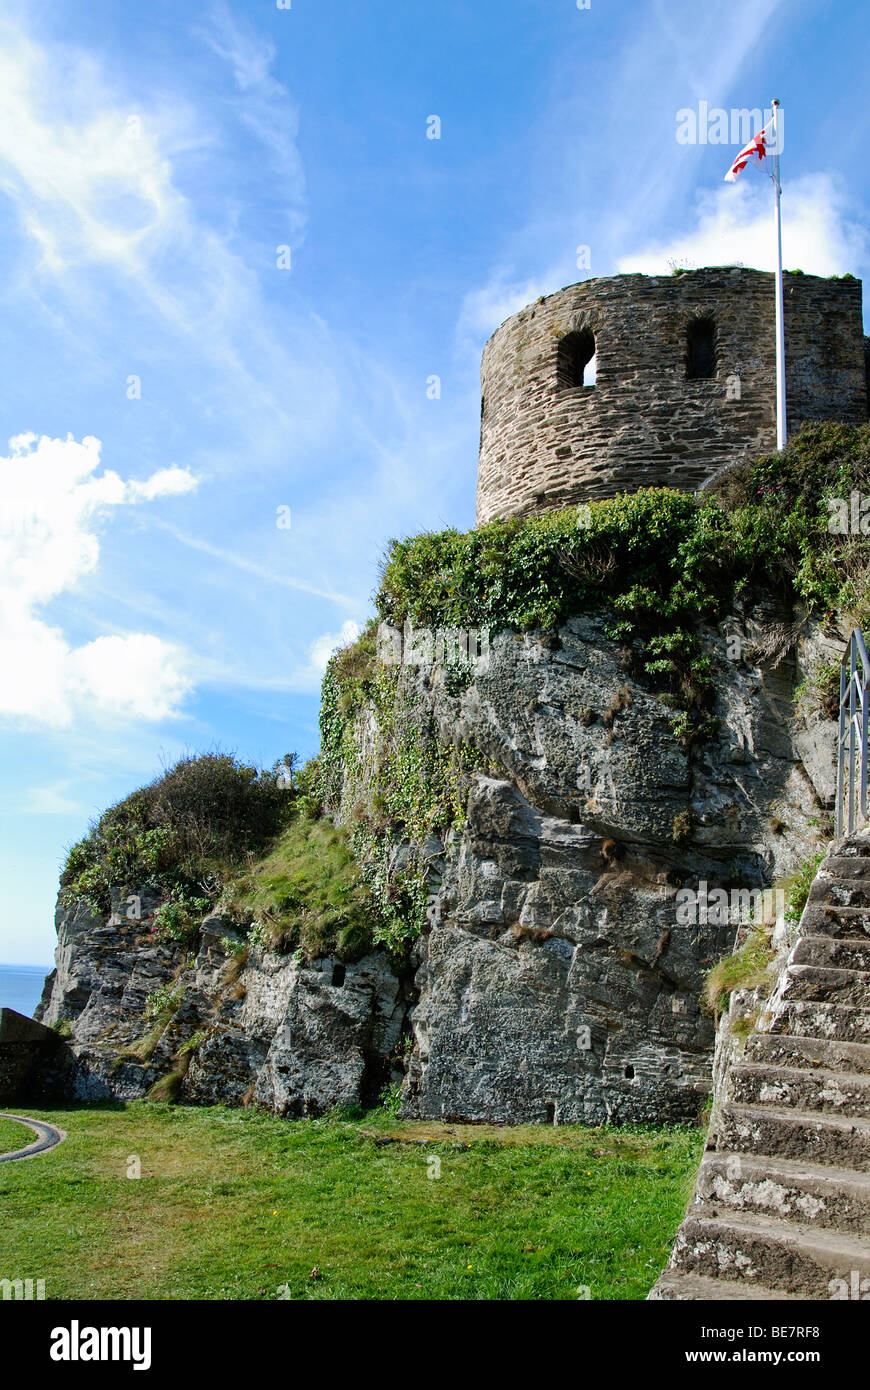 St.catherines château construit en surplomb de l'embouchure de l'estuaire de fowey cornwall,uk Banque D'Images